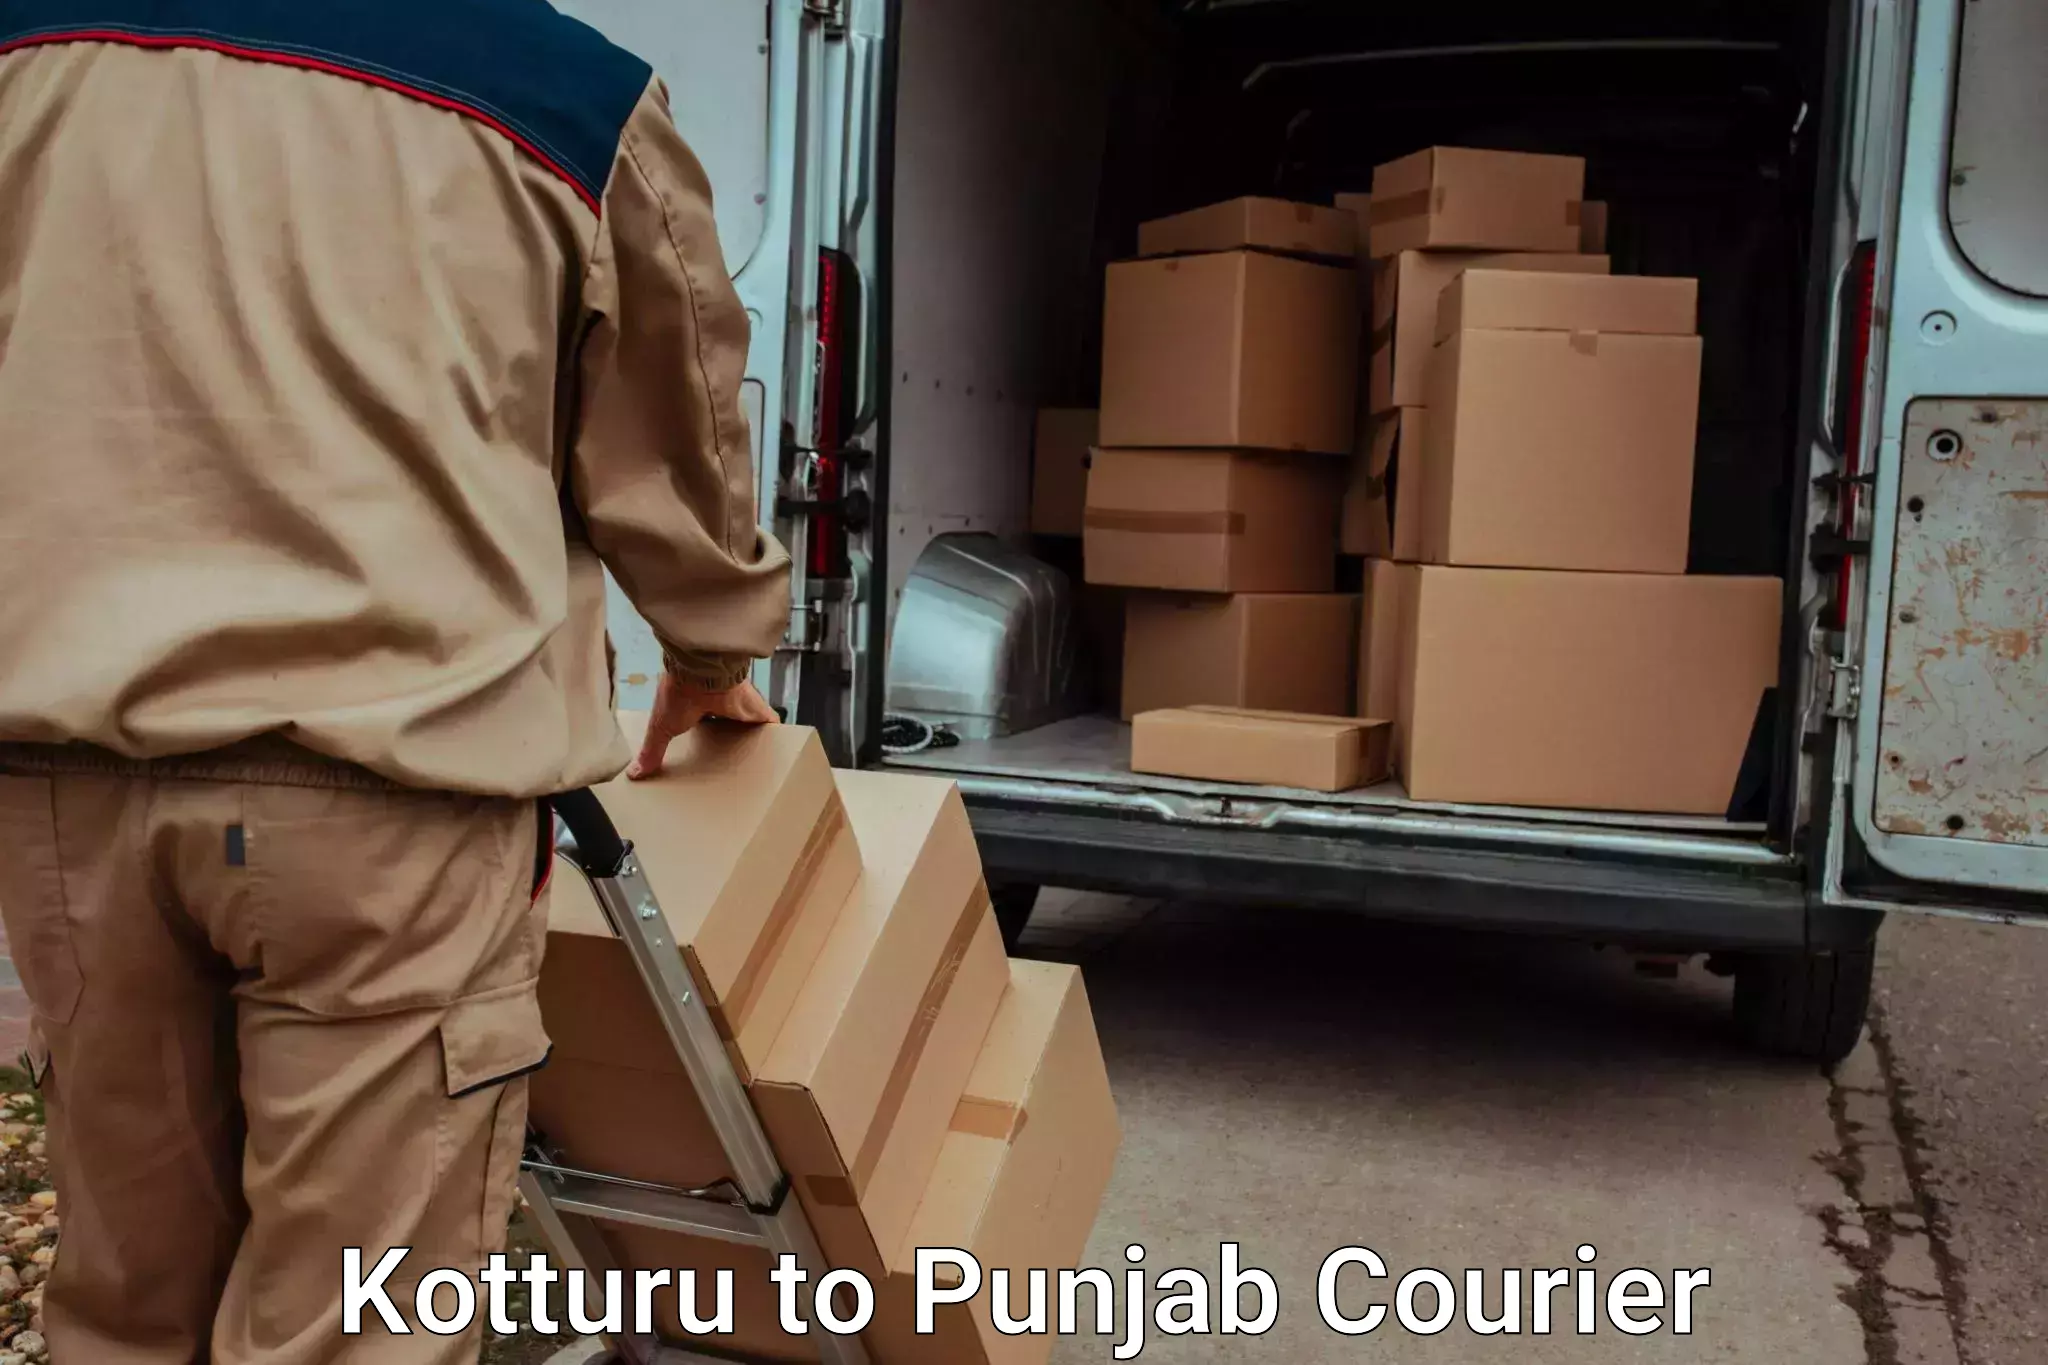 Moving and packing experts Kotturu to Punjab